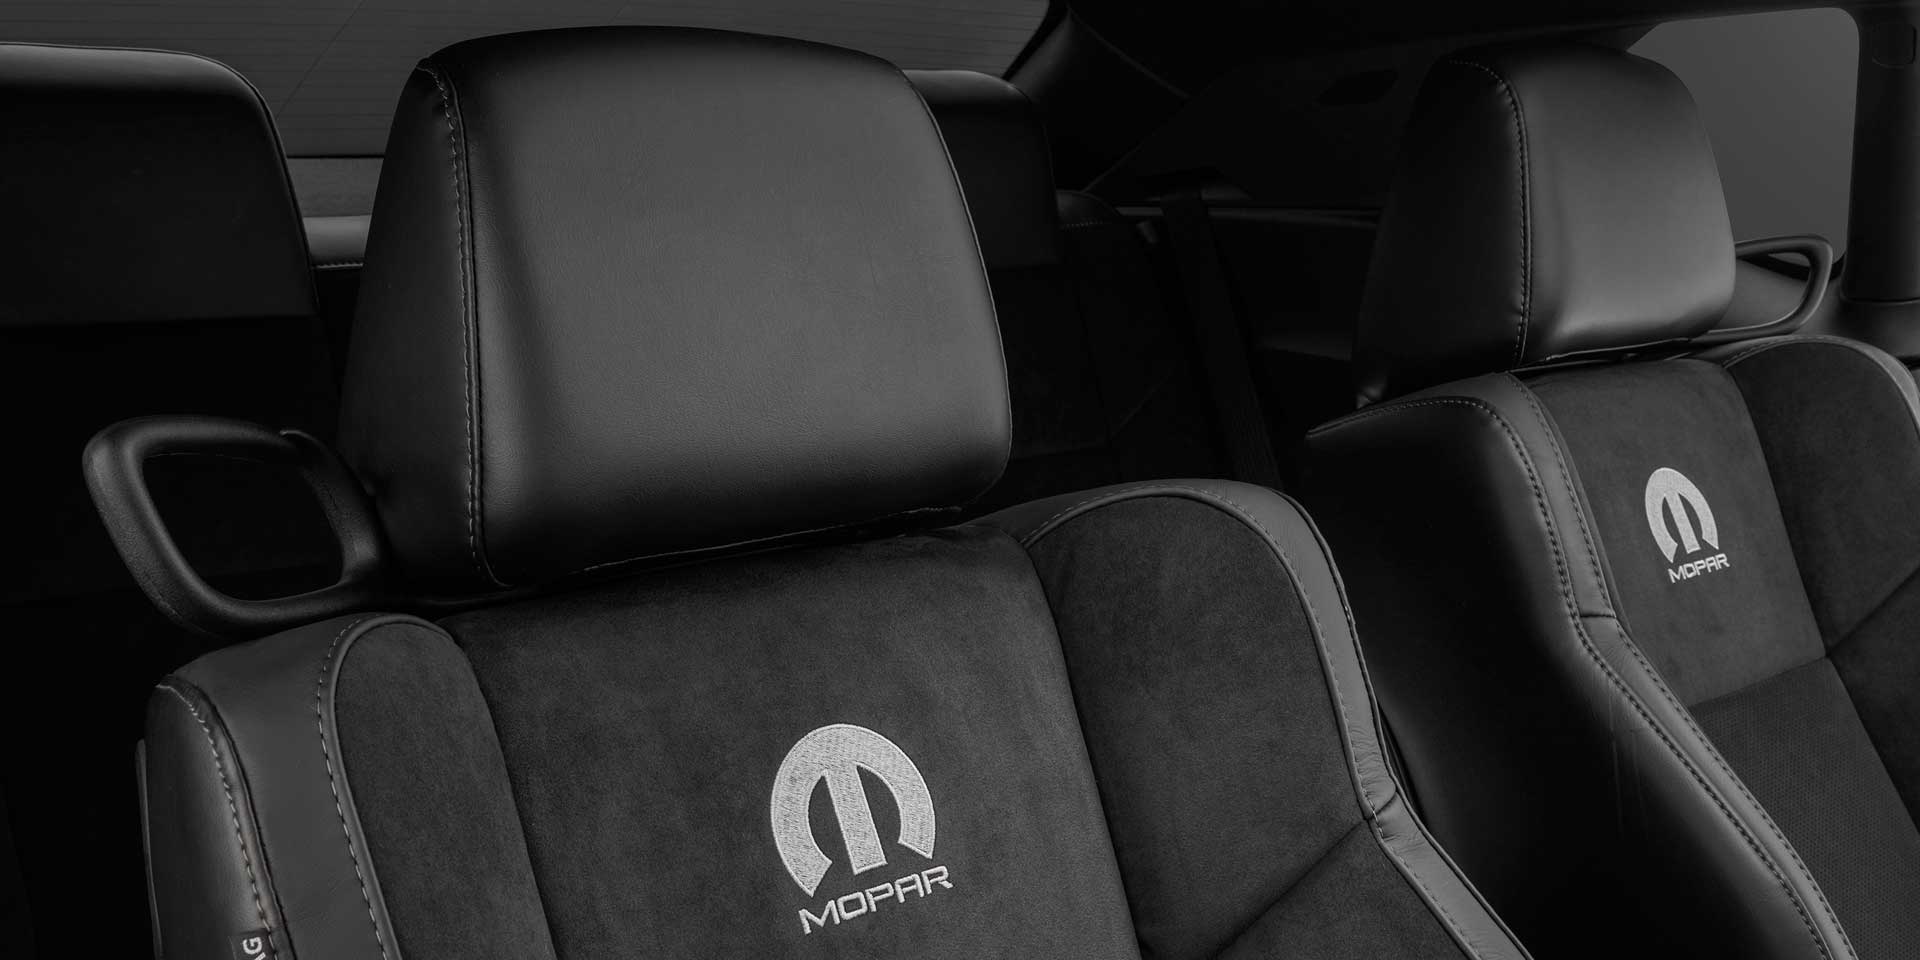 نمایی از صندلیهای دوج موپار چلنجر مدل سال 2017 میلادی